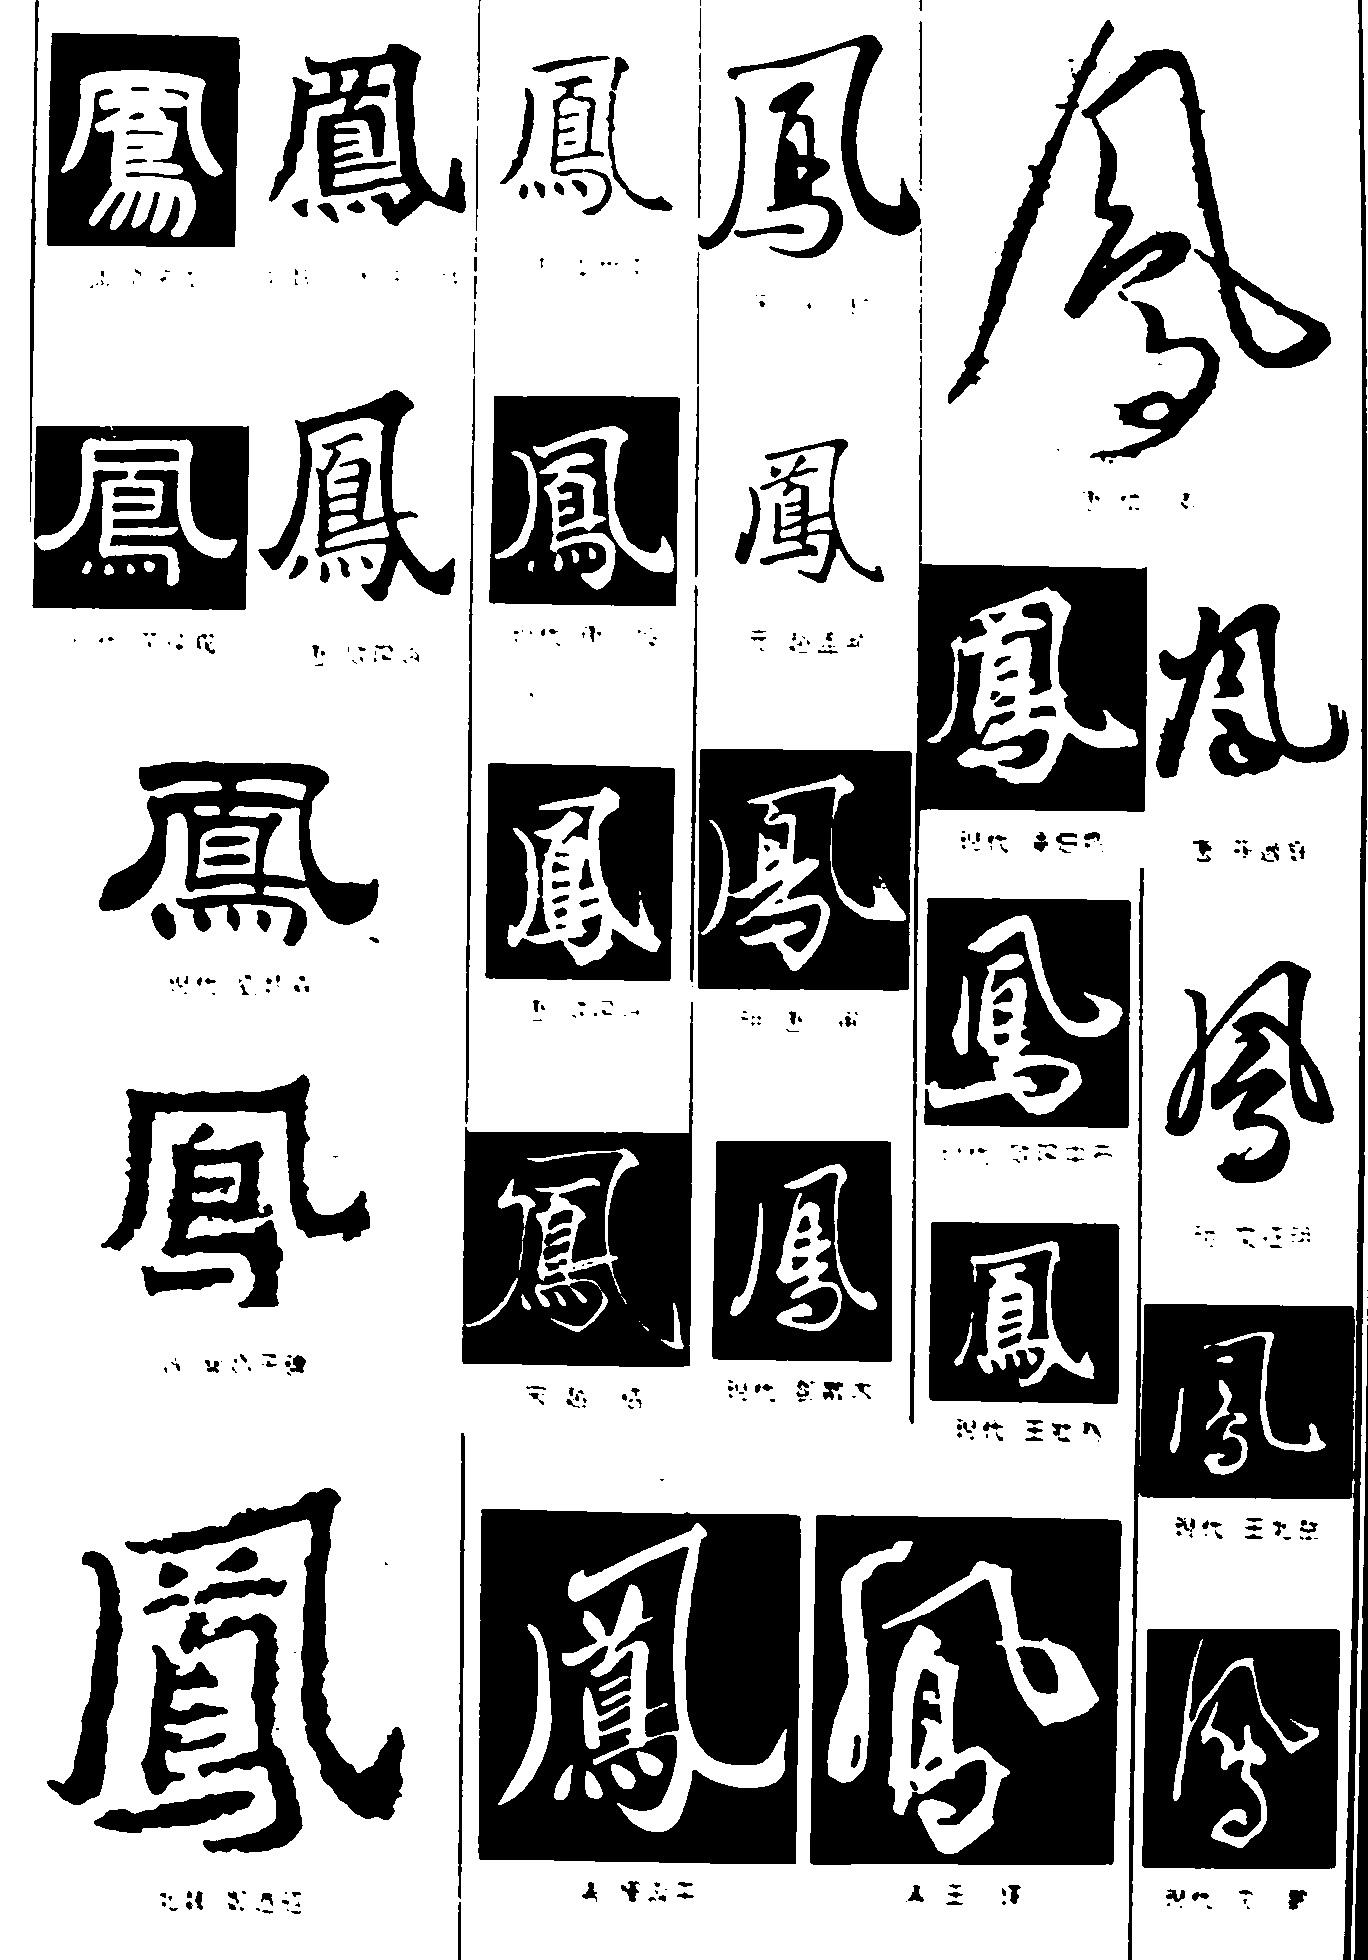 凤_书法字体_字体设计作品-中国字体设计网_ziti.